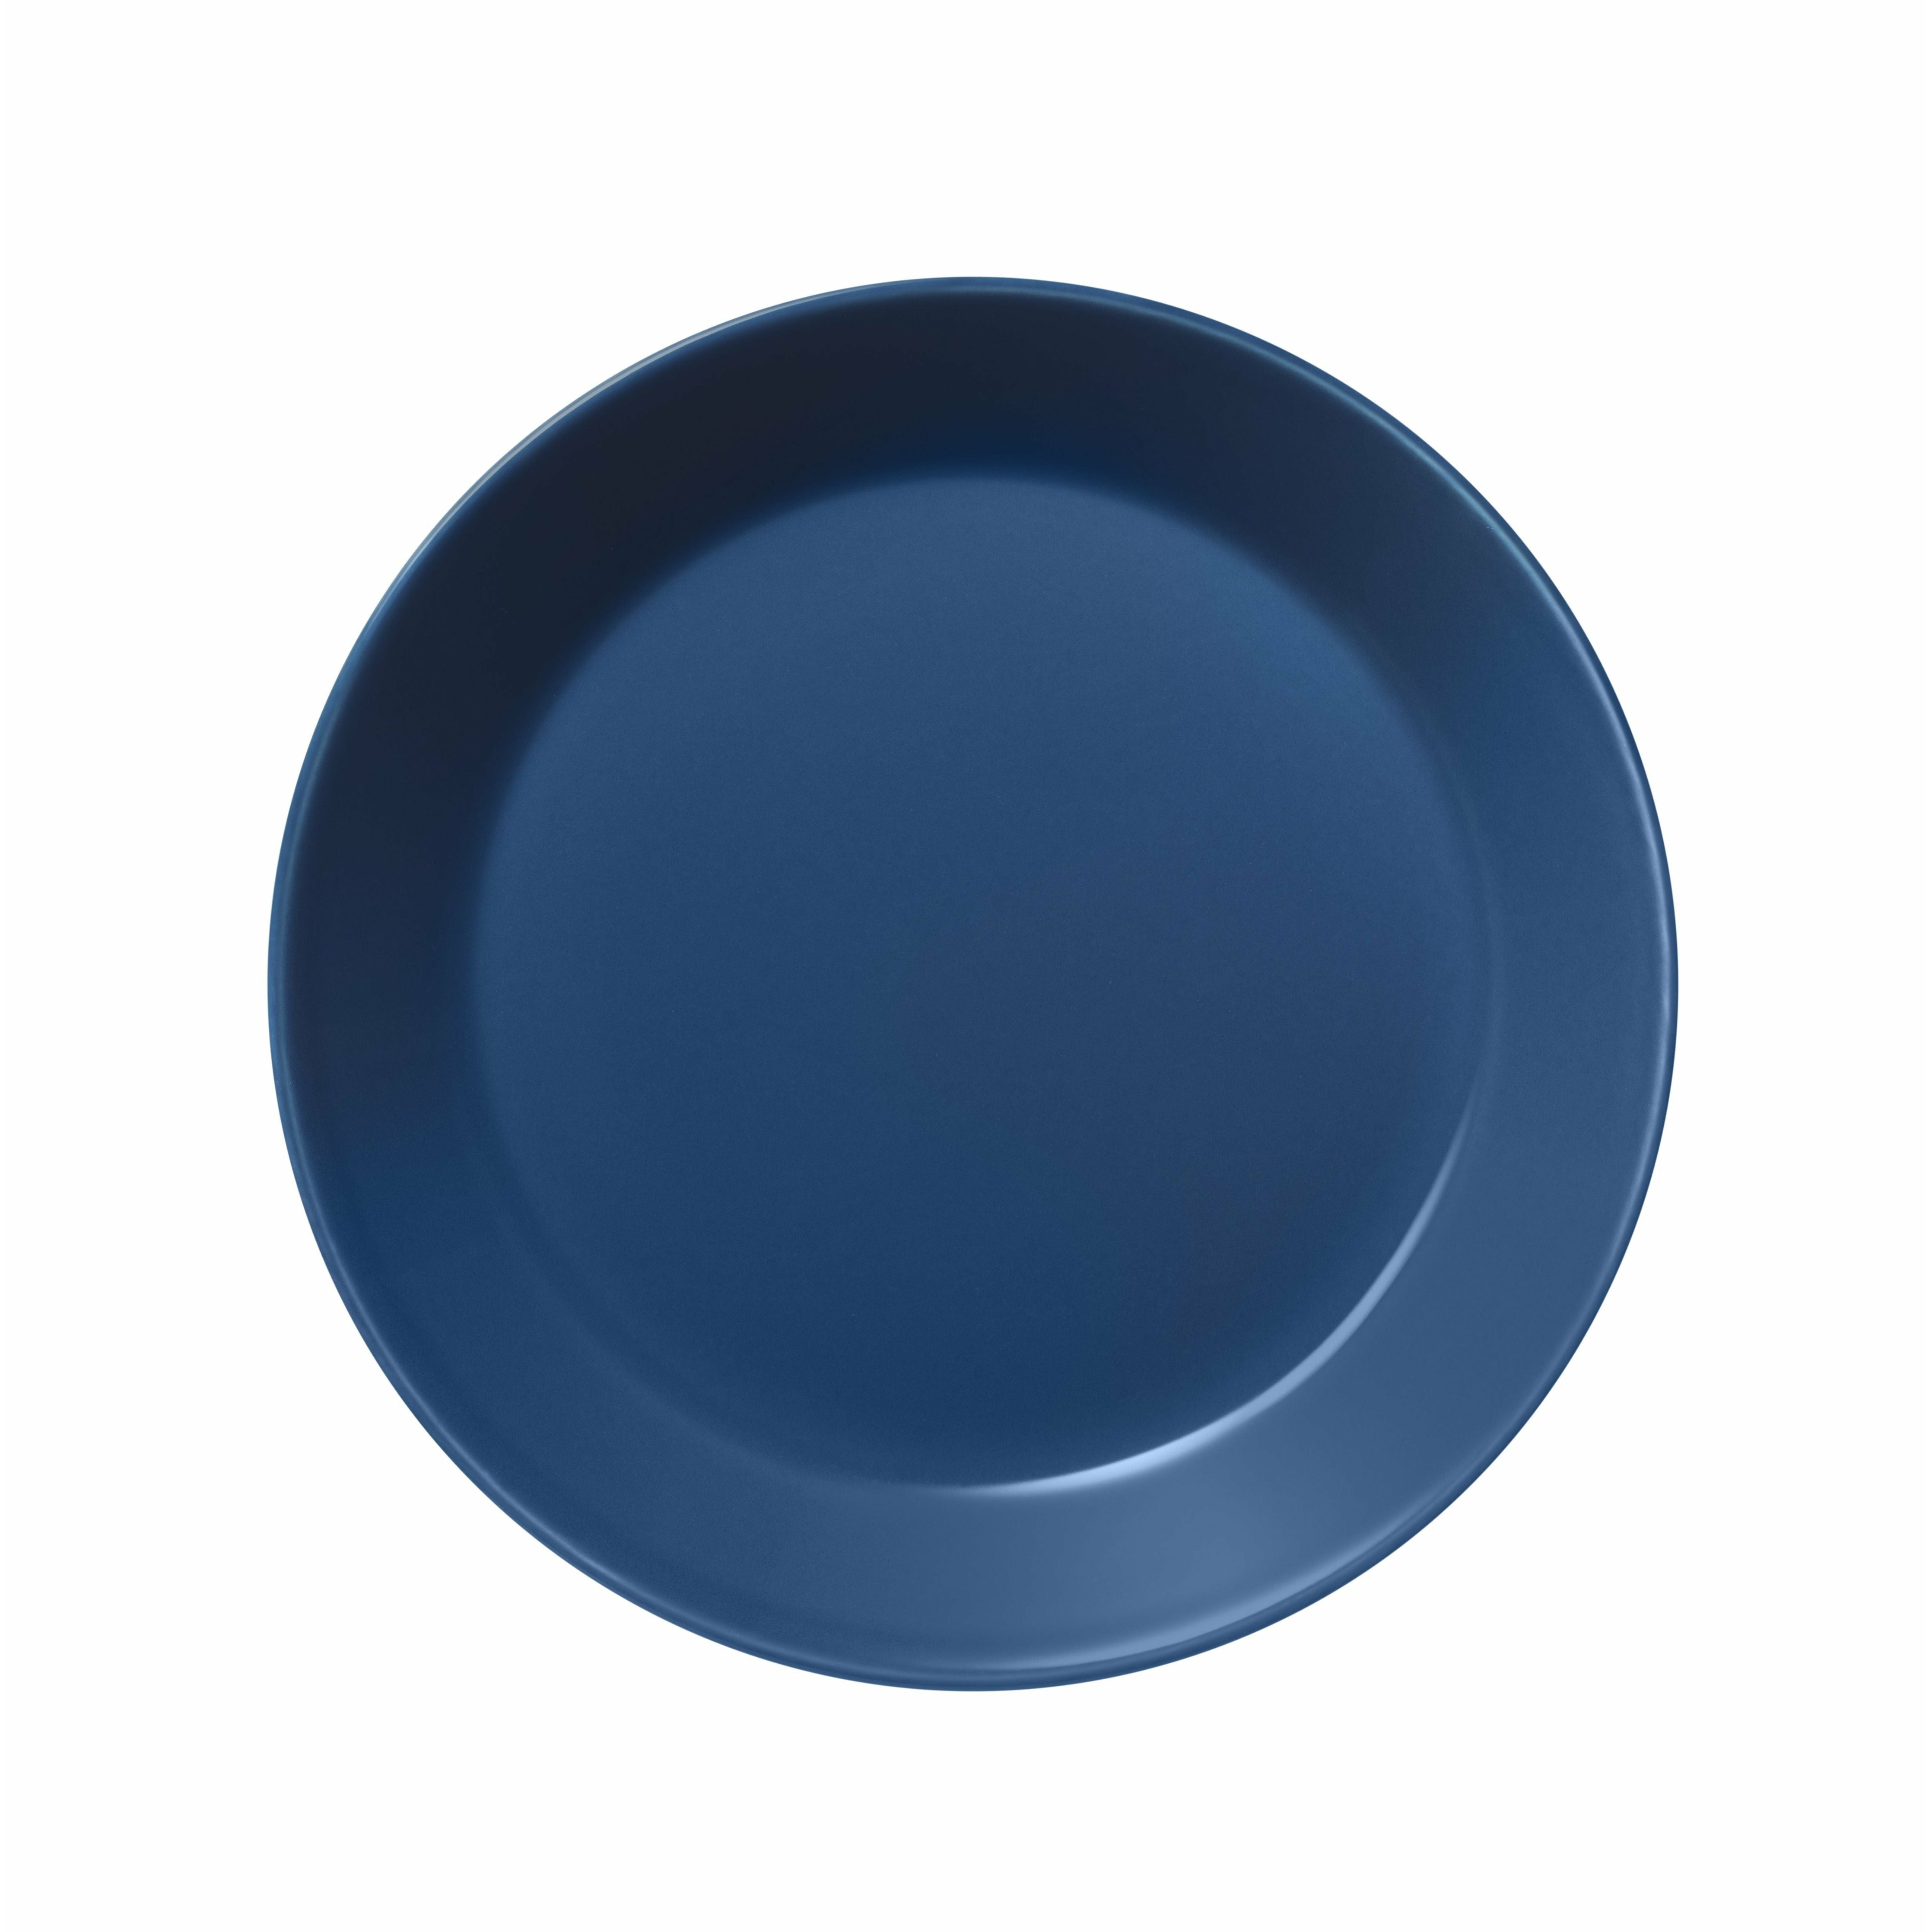 Iittala teema plate 17cm, vintage blå